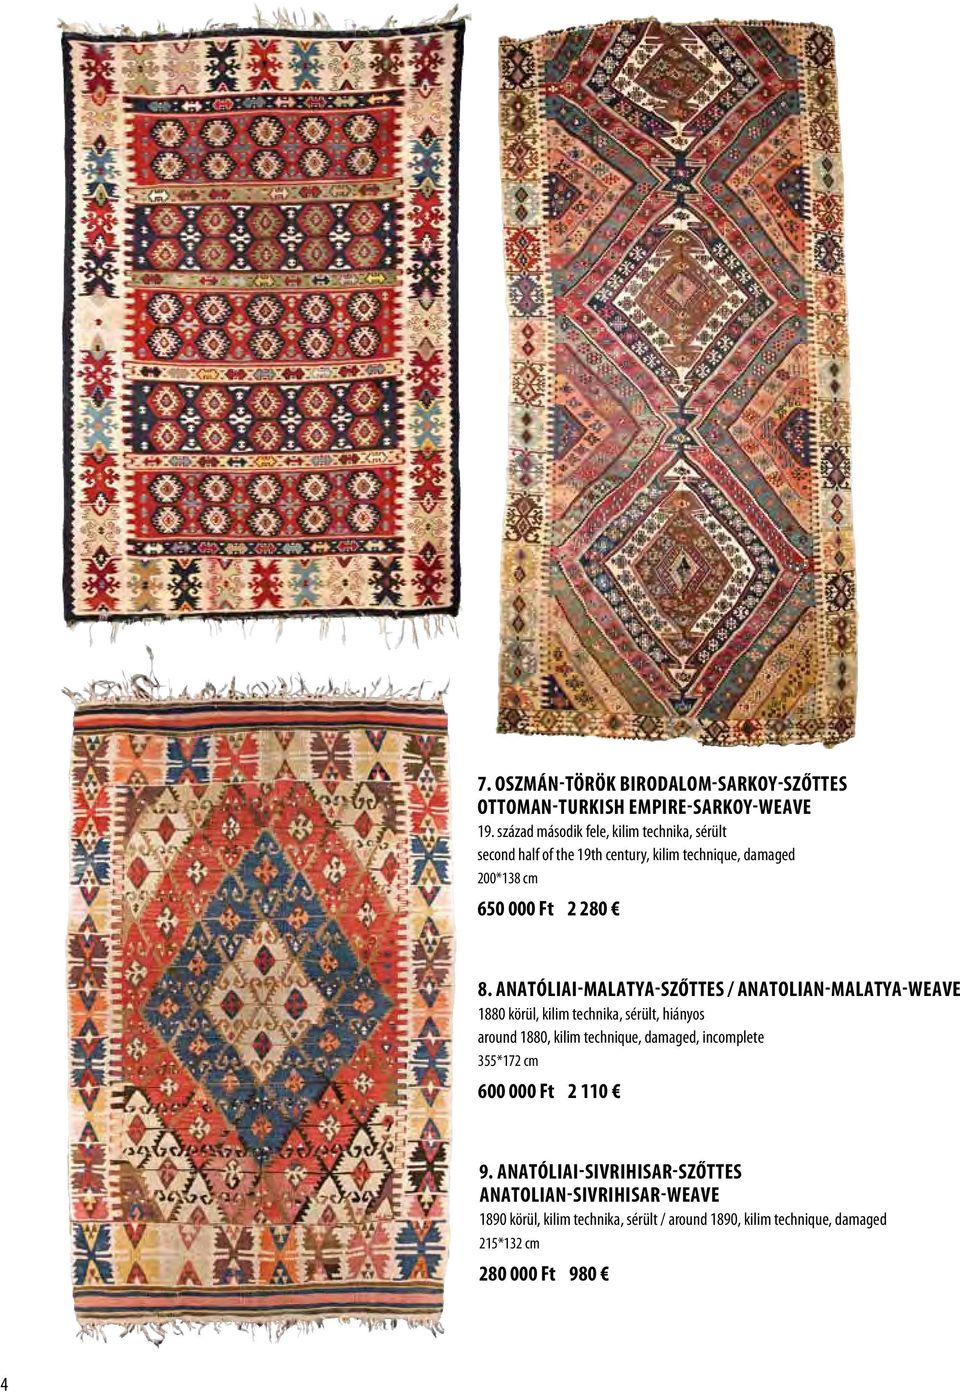 Anatóliai-Malatya-szőttes / Anatolian-Malatya-weave 1880 körül, kilim technika, sérült, hiányos around 1880, kilim technique, damaged,